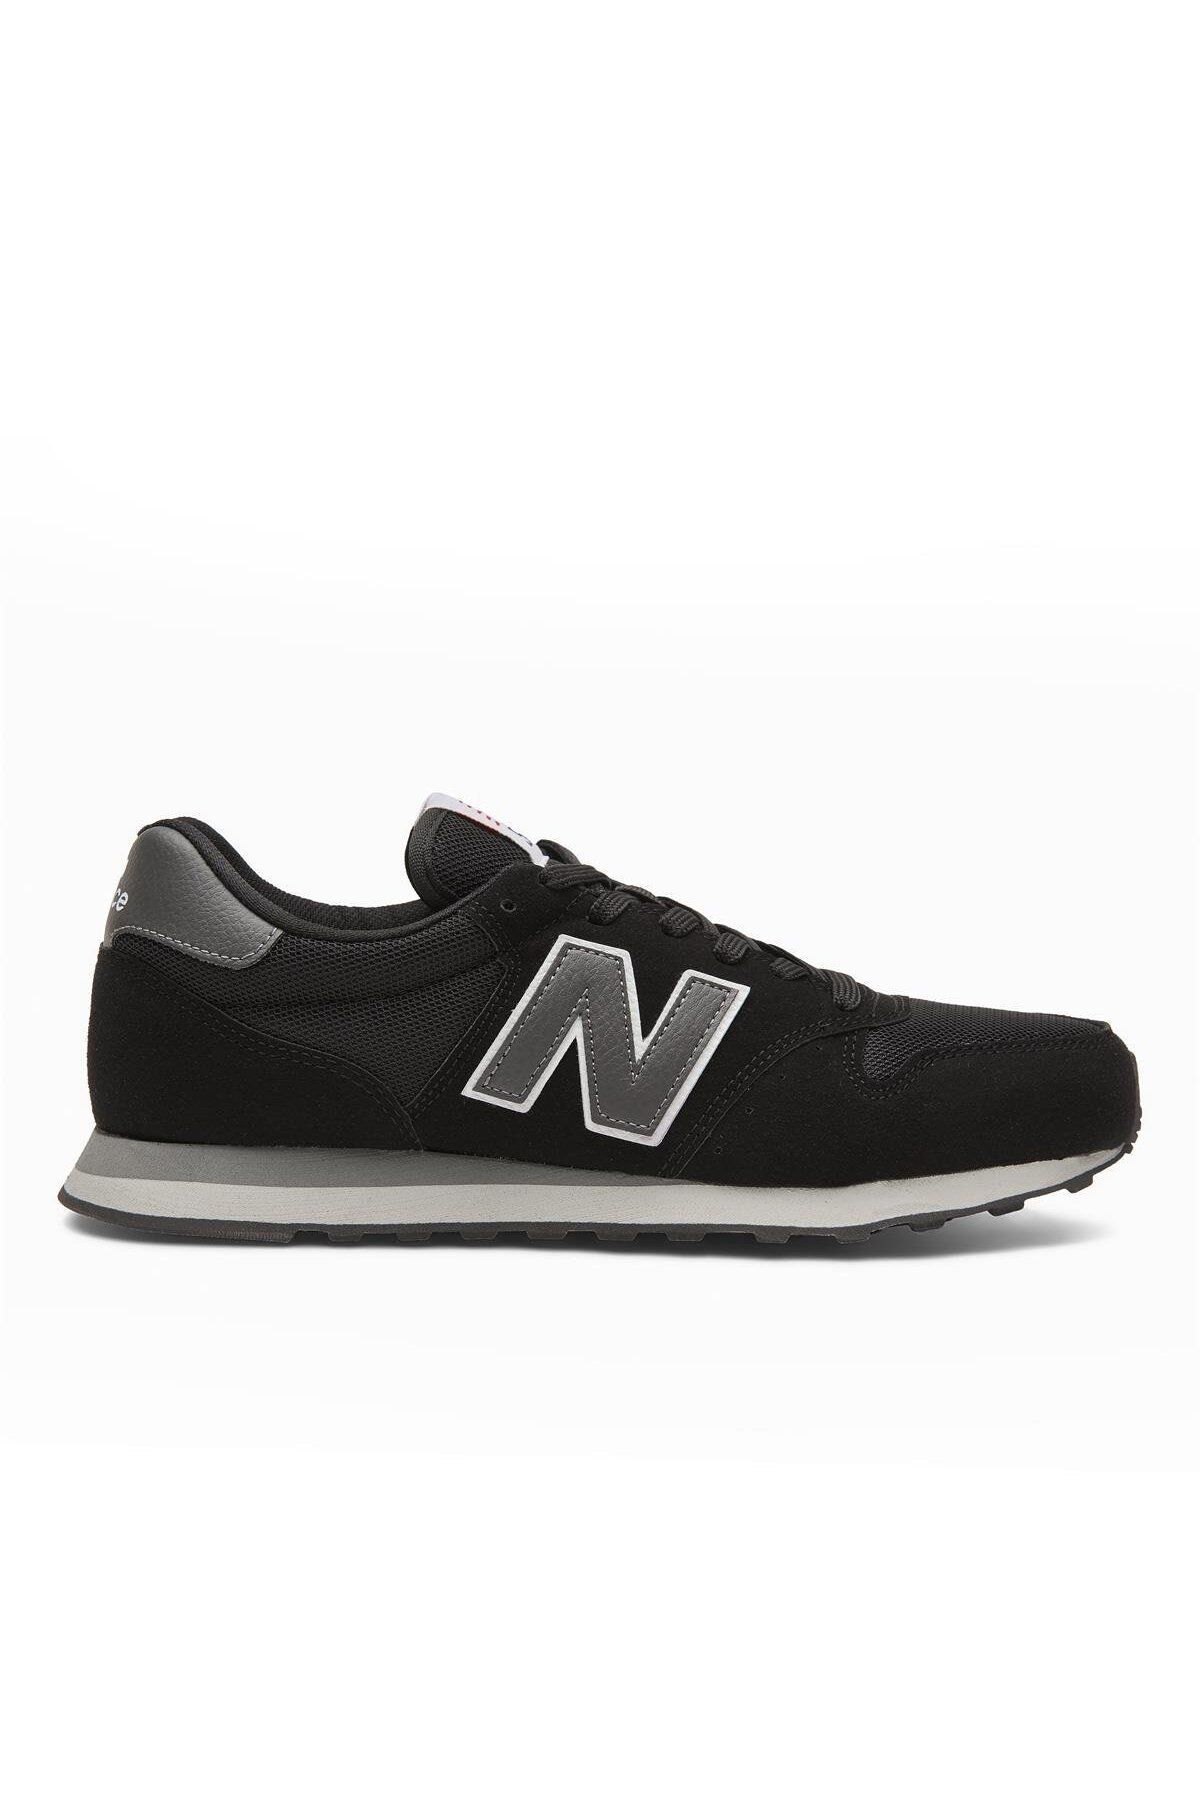 New Balance 500 Siyah Erkek Sneaker Spor Ayakkabı Gm500bbs